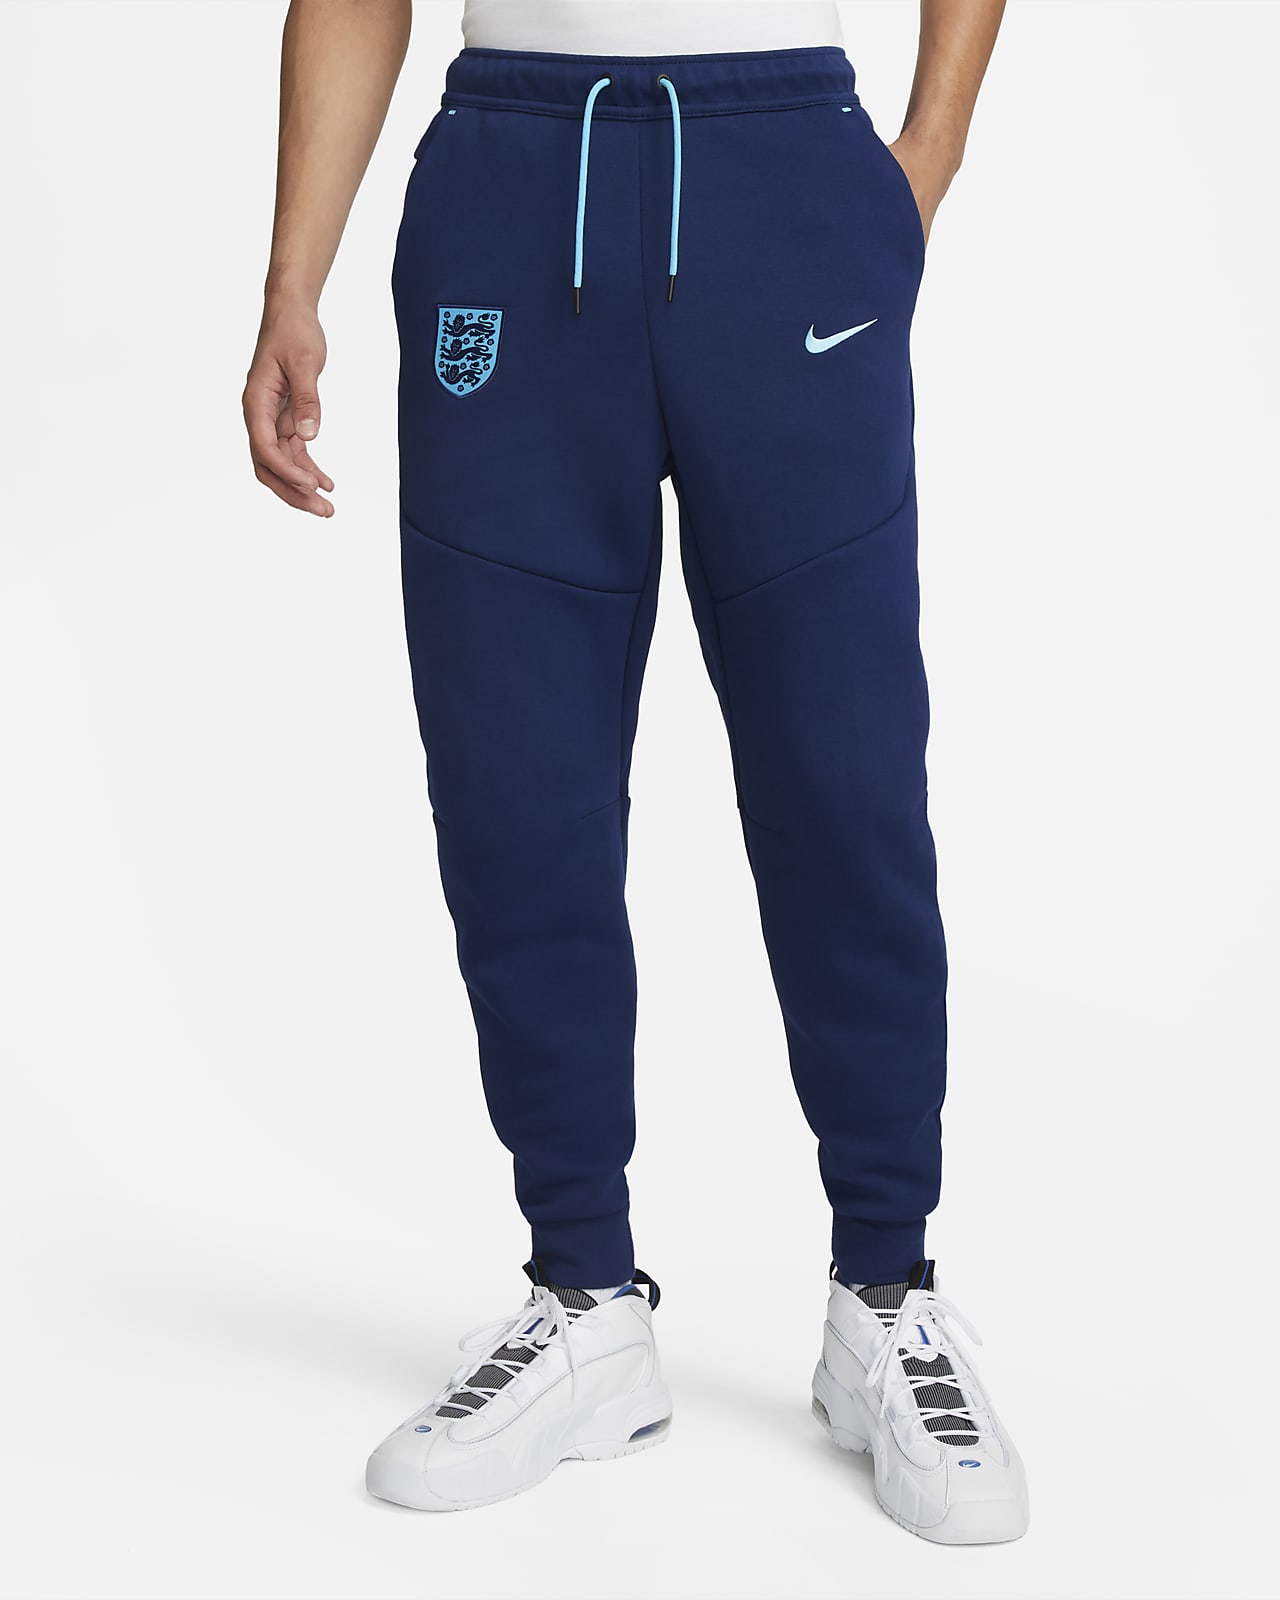 Pantalones de entrenamiento para Fleece. Nike.com